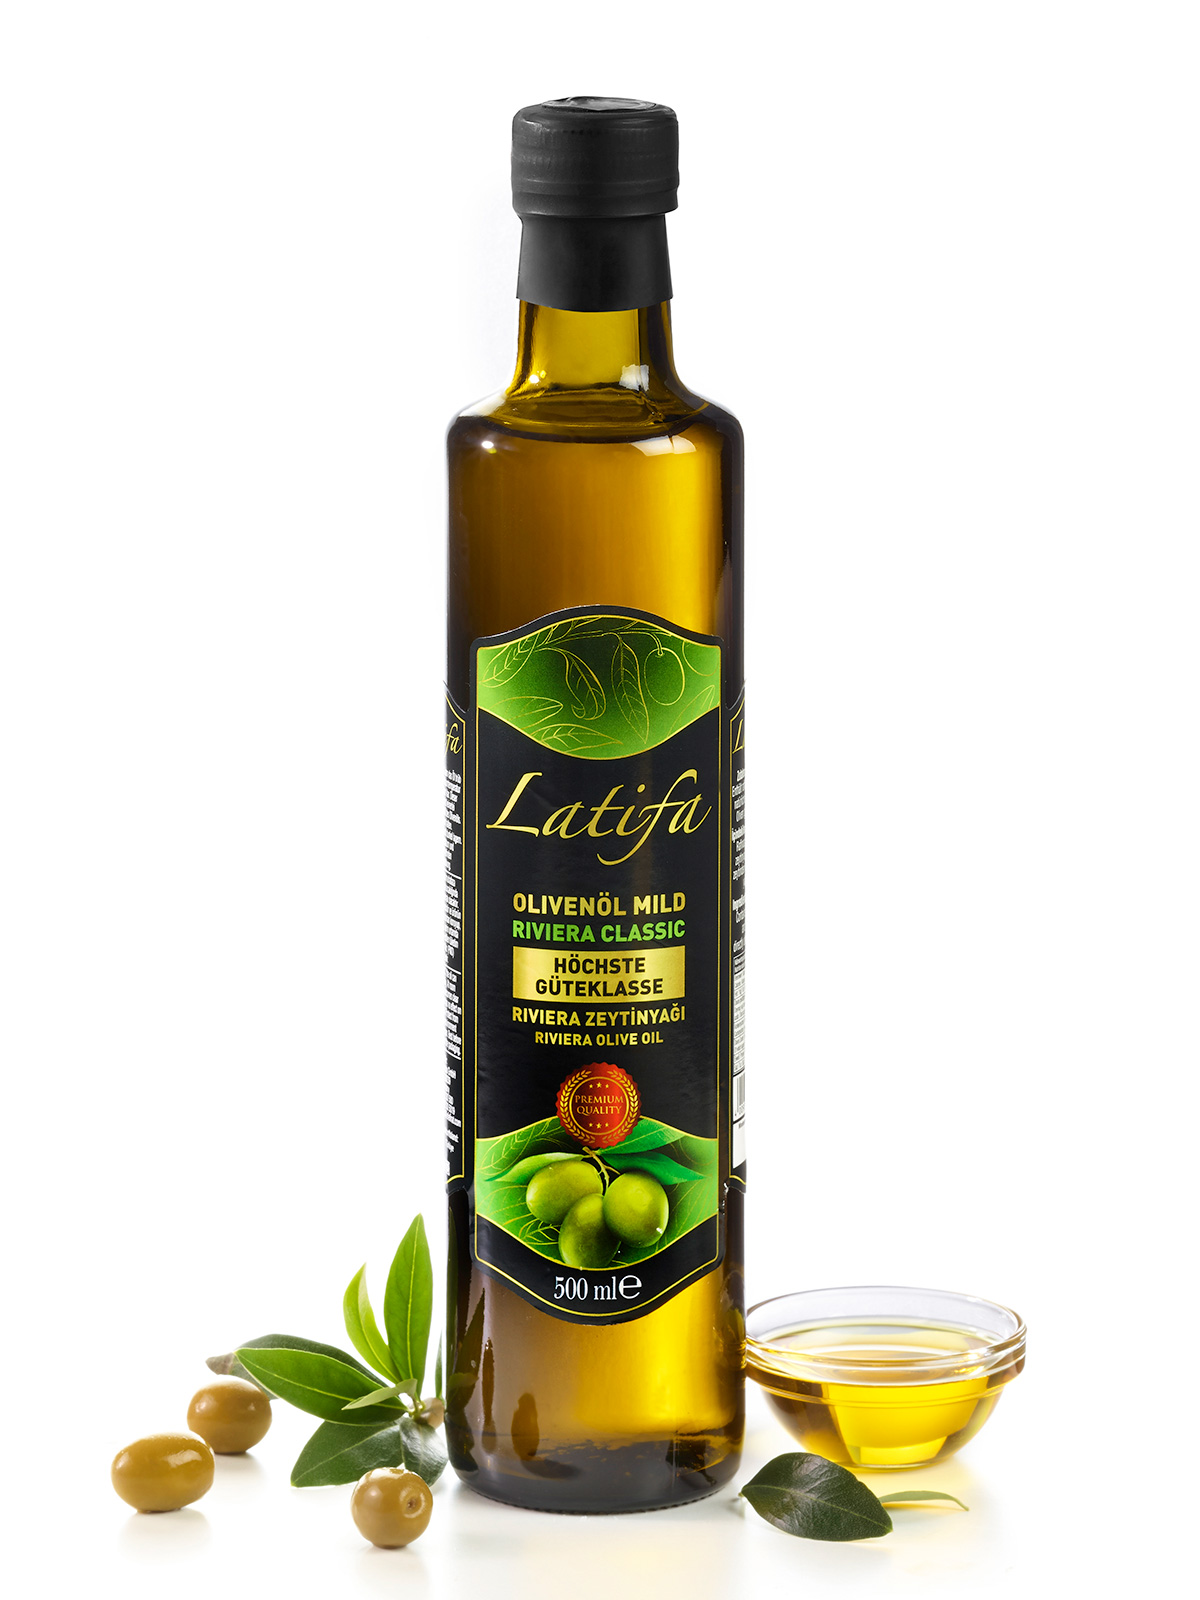 Olivenöl mild Riviera Classic